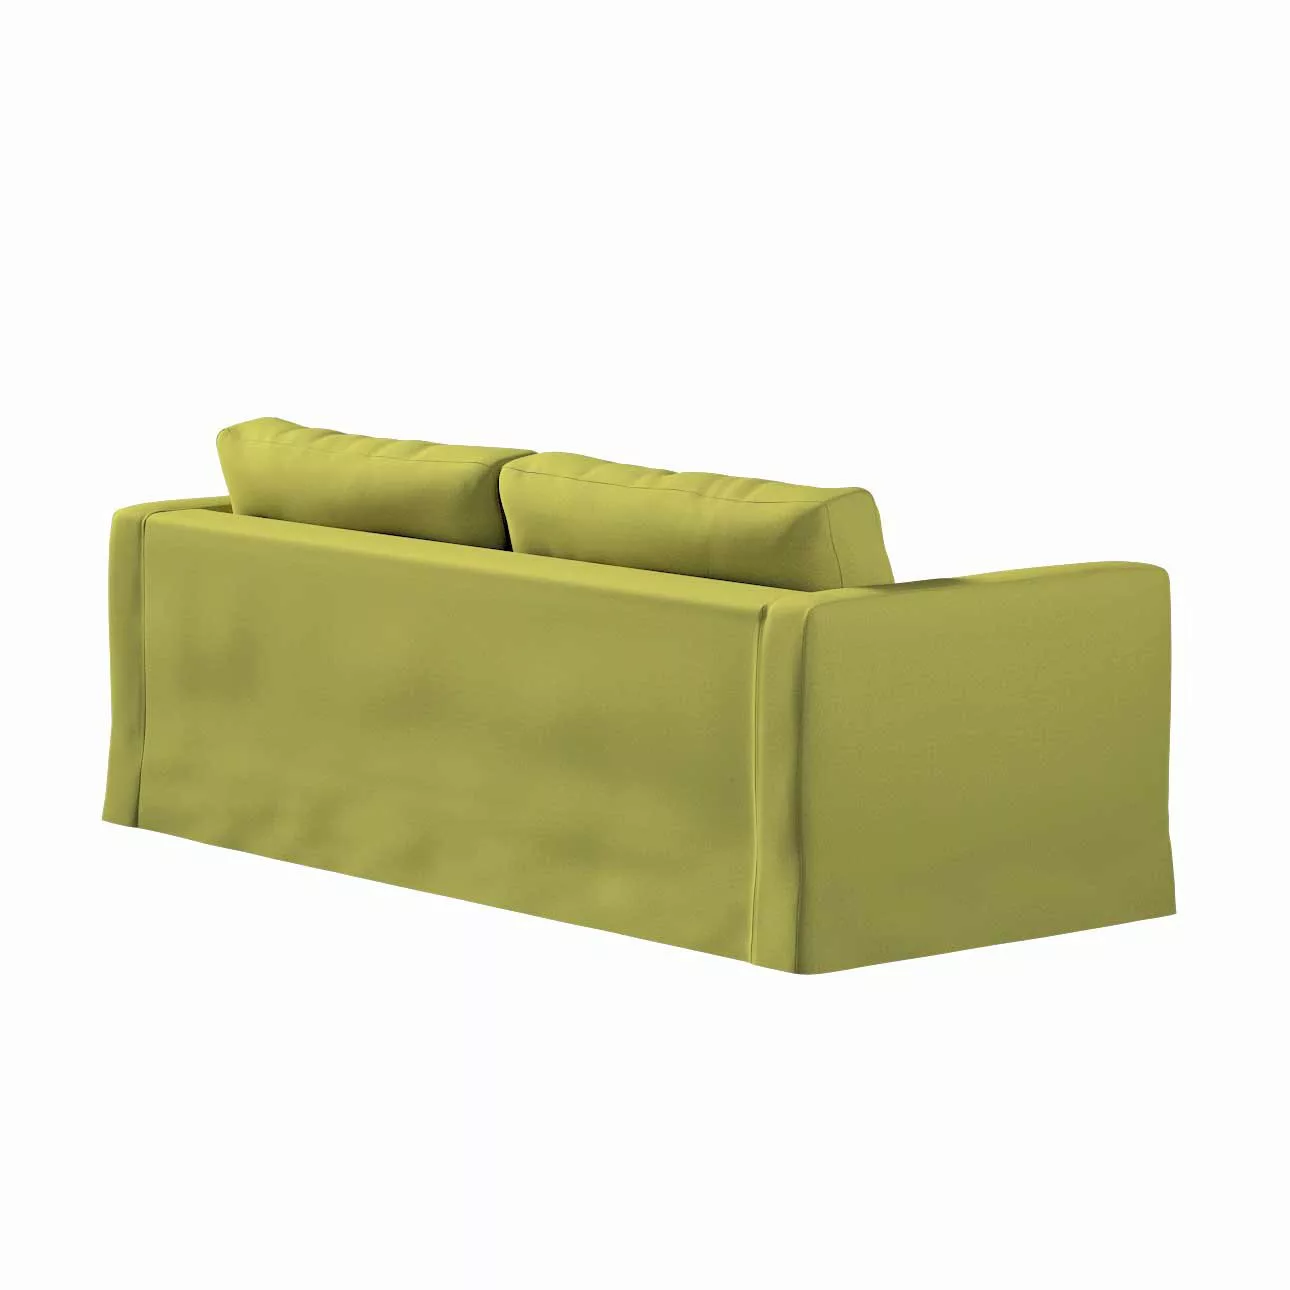 Bezug für Karlstad 3-Sitzer Sofa nicht ausklappbar, lang, limone, Bezug für günstig online kaufen